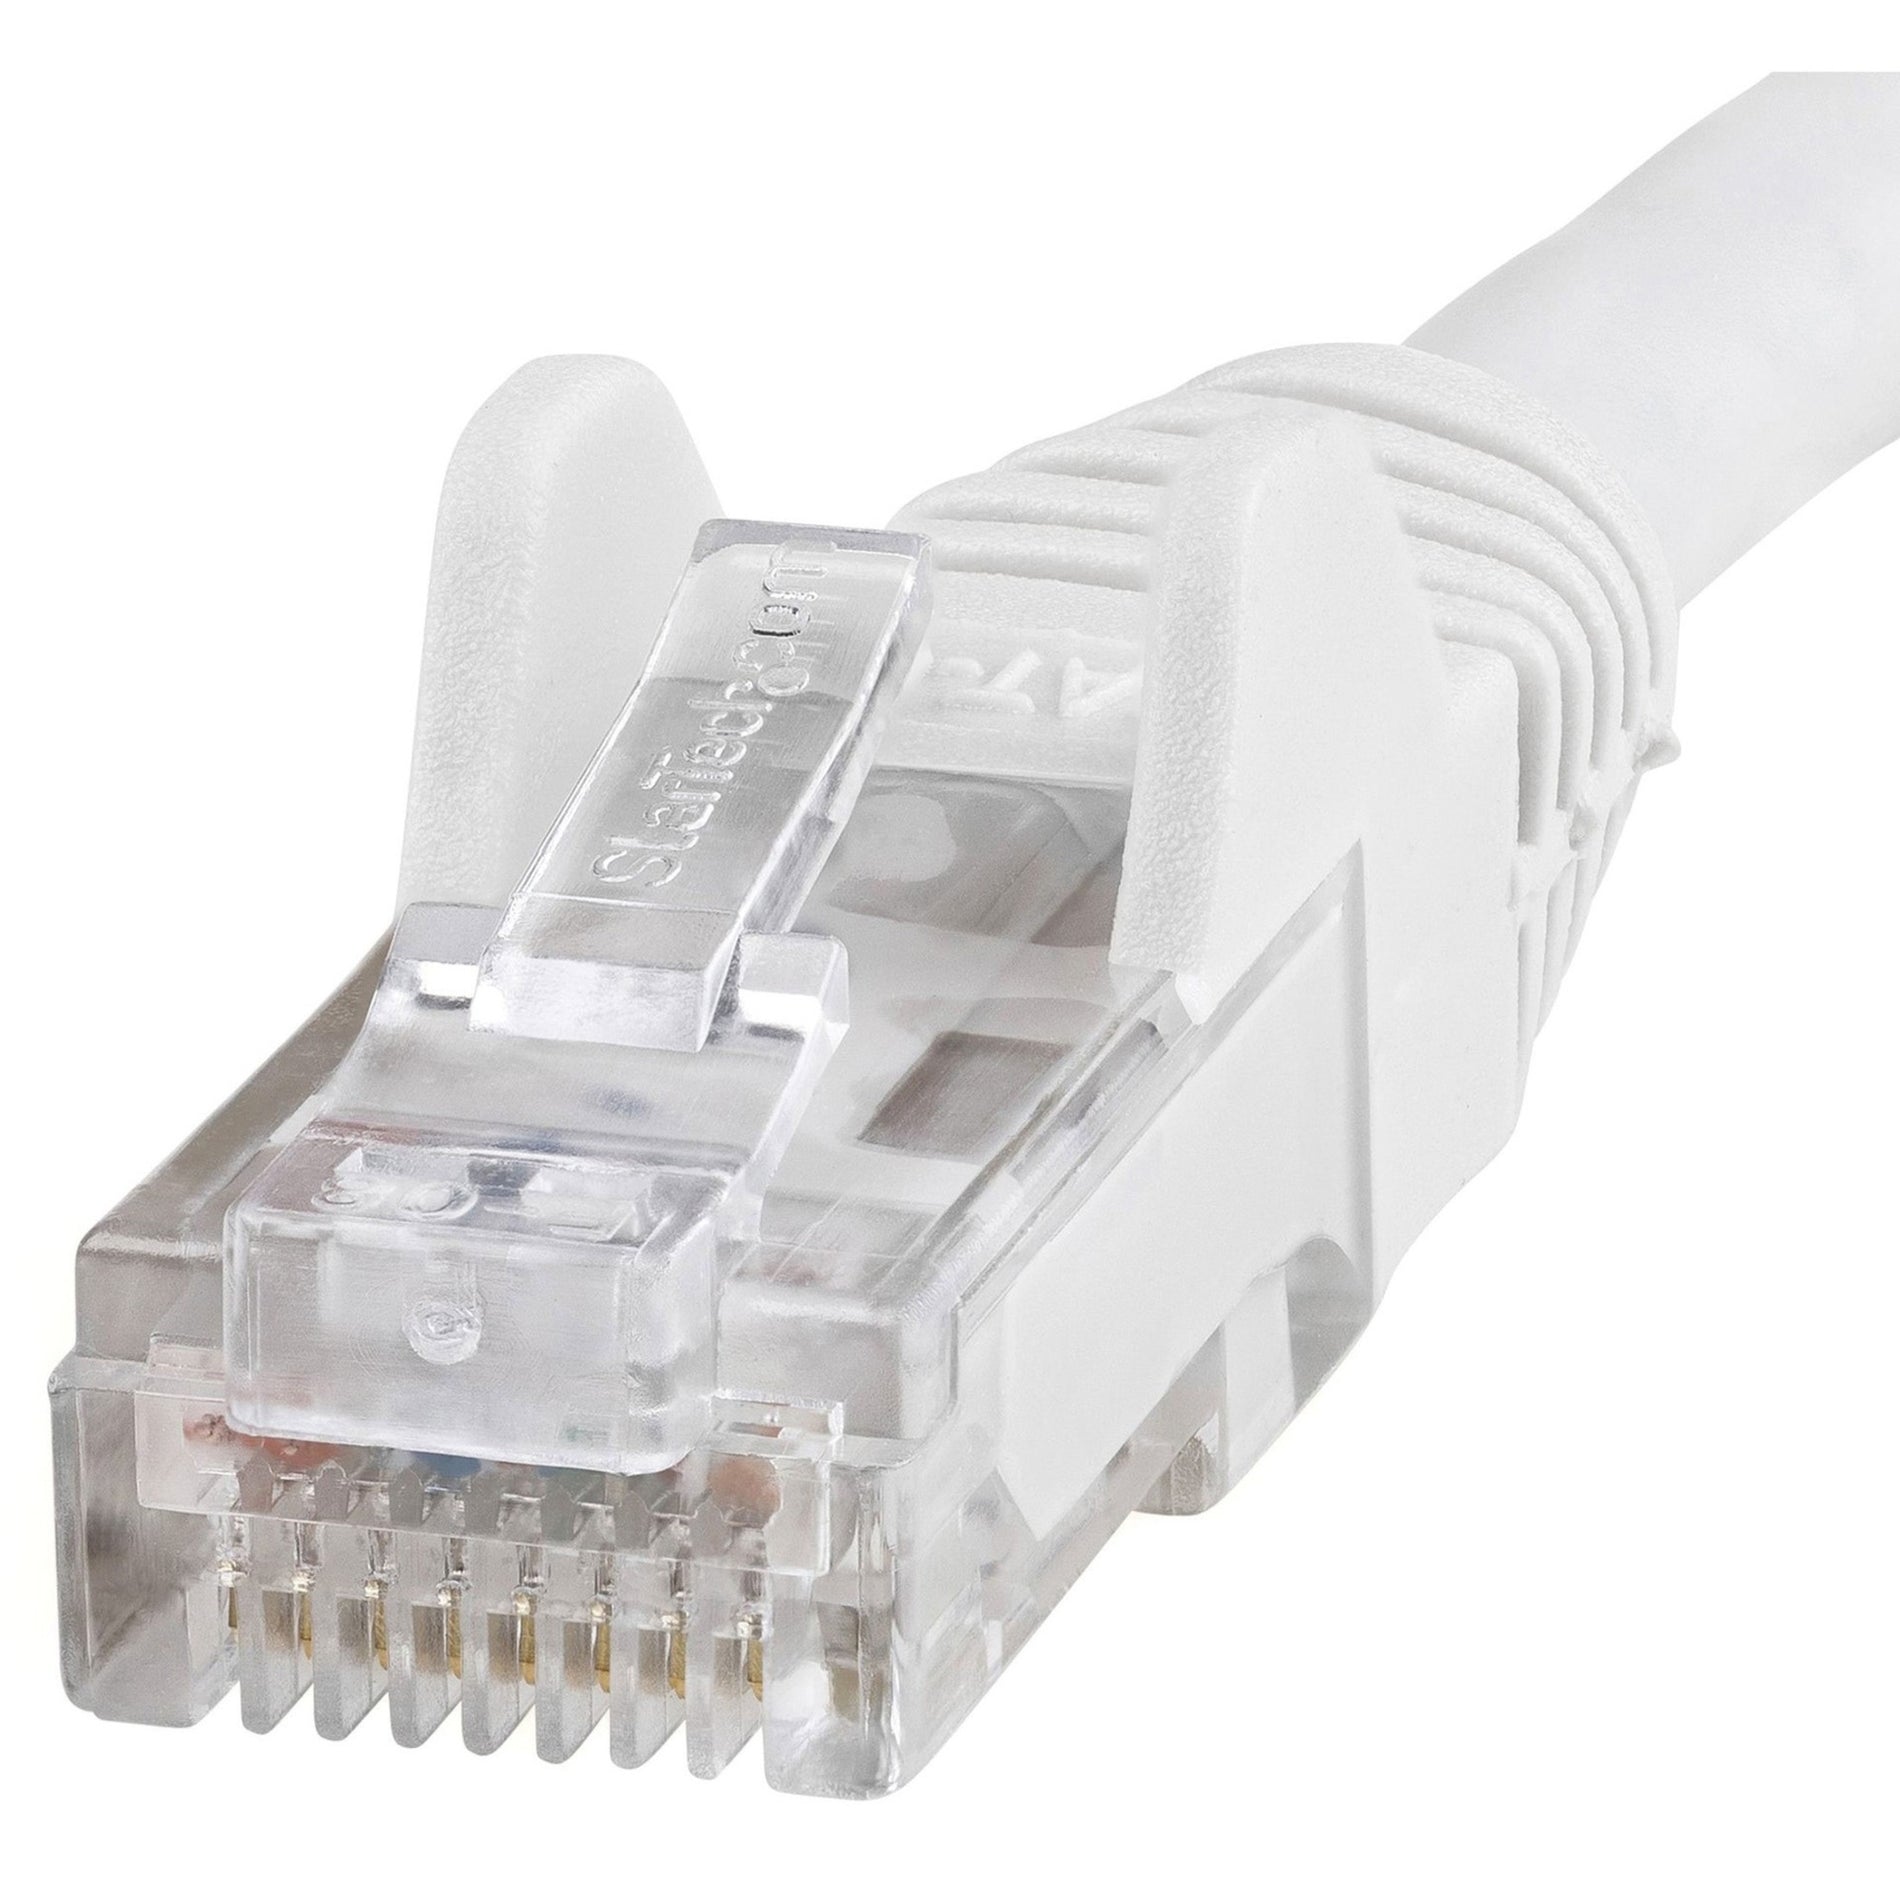 Câble de raccordement Cat6 StarTech.com N6PATCH8WH 8 pi Câble Ethernet blanc avec connecteurs RJ45 sans accrocs